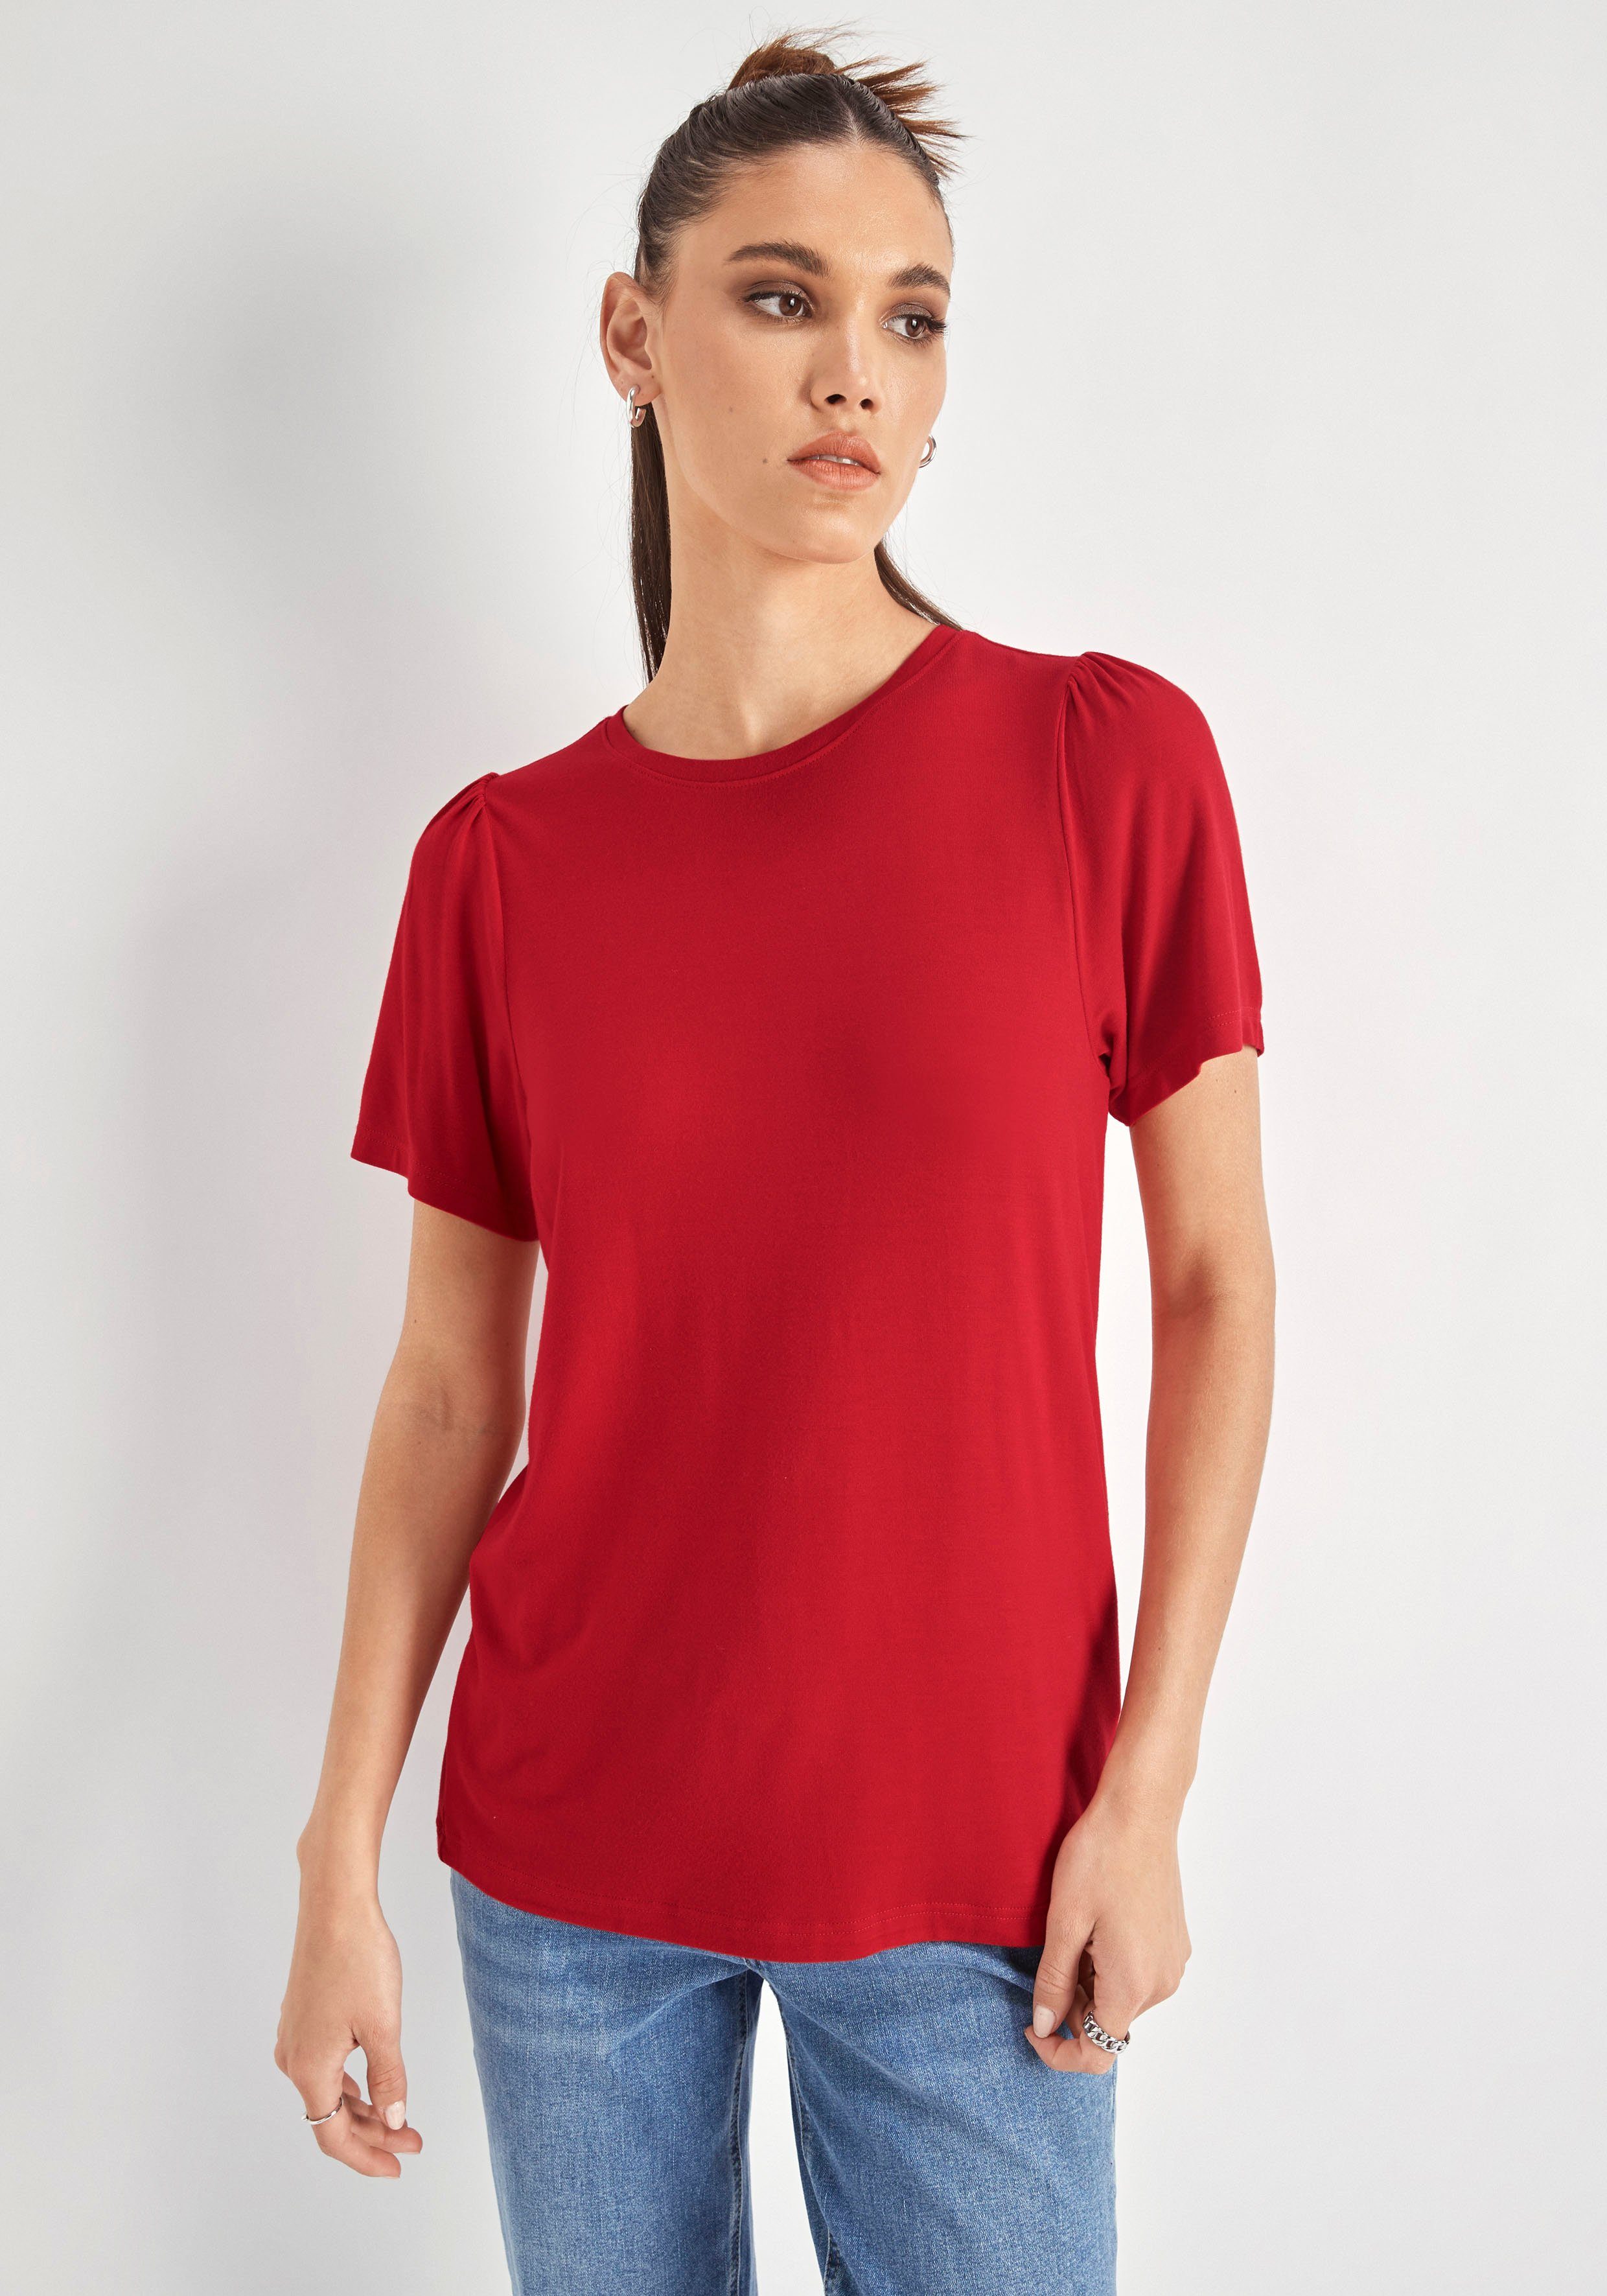 HECHTER PARIS T-Shirt rot mit Puffschultern